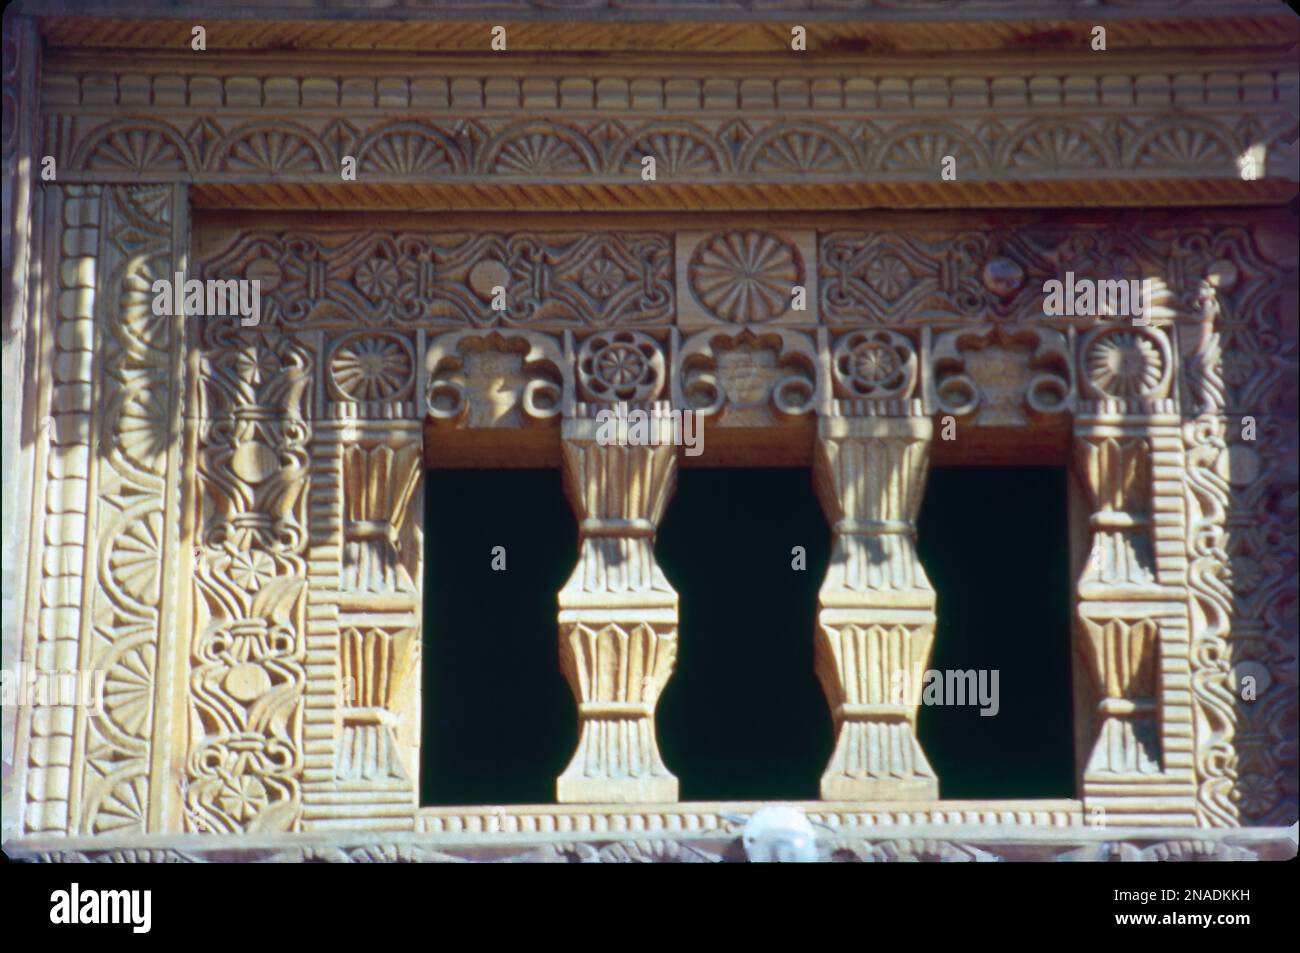 Dieser Tempel ist Gaycomed Mata gewidmet, einer sehr verehrten Gottheit und ein antiker Tempel. Der Gaycomed Tempel von Manali ist einer der sehr berühmten und beliebten alten Tempel in Himachal Pradesh. Es liegt 6 km im südlichen Teil von Manali. Stockfoto